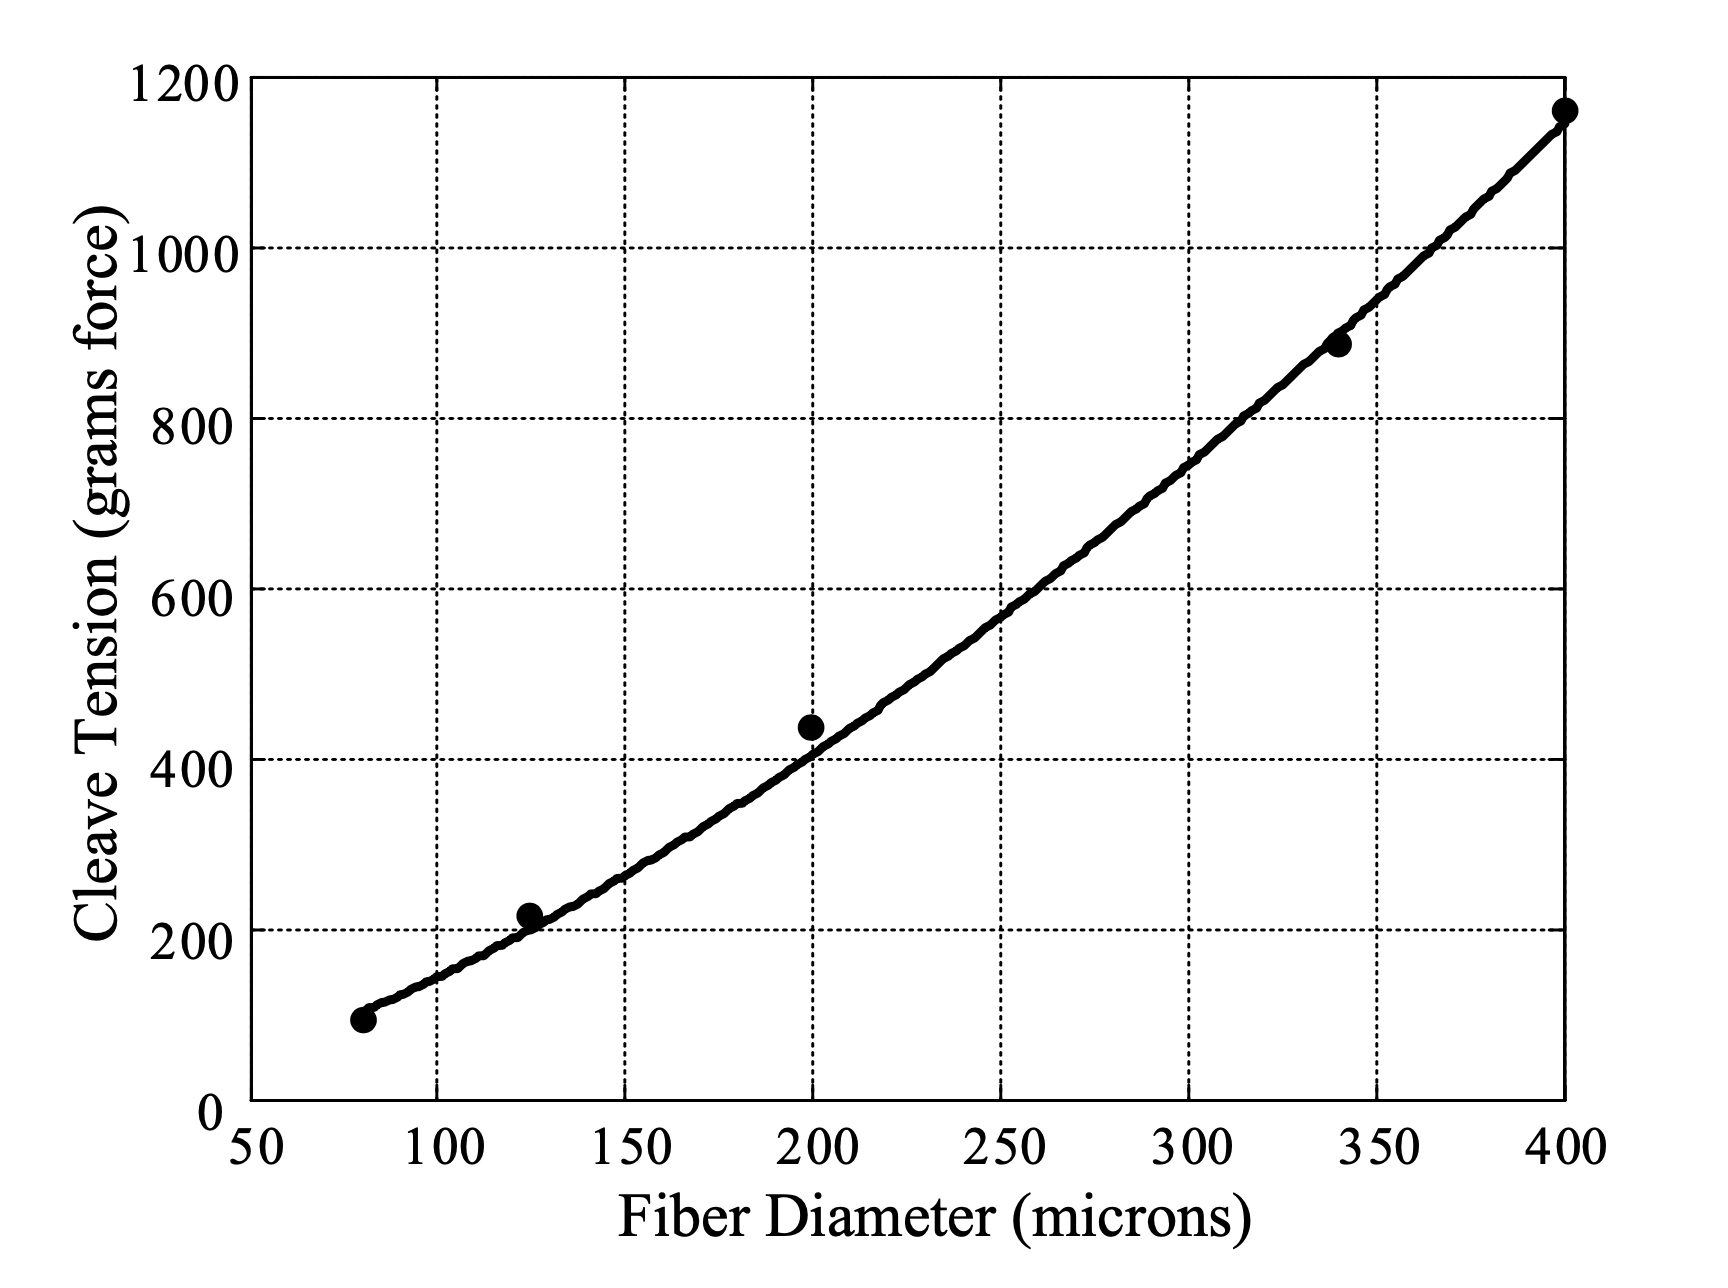 کشش شکاف بهینه برای مقیاس های فیبر سیلیس با قطر فیبر به توان 3/2 افزایش یافته است. کشش های شکاف بهینه مشاهده شده تجربی (دایره های جامد) با یک پیش بینی نظری بر اساس (A.A1) موافق است. (خط توپر)